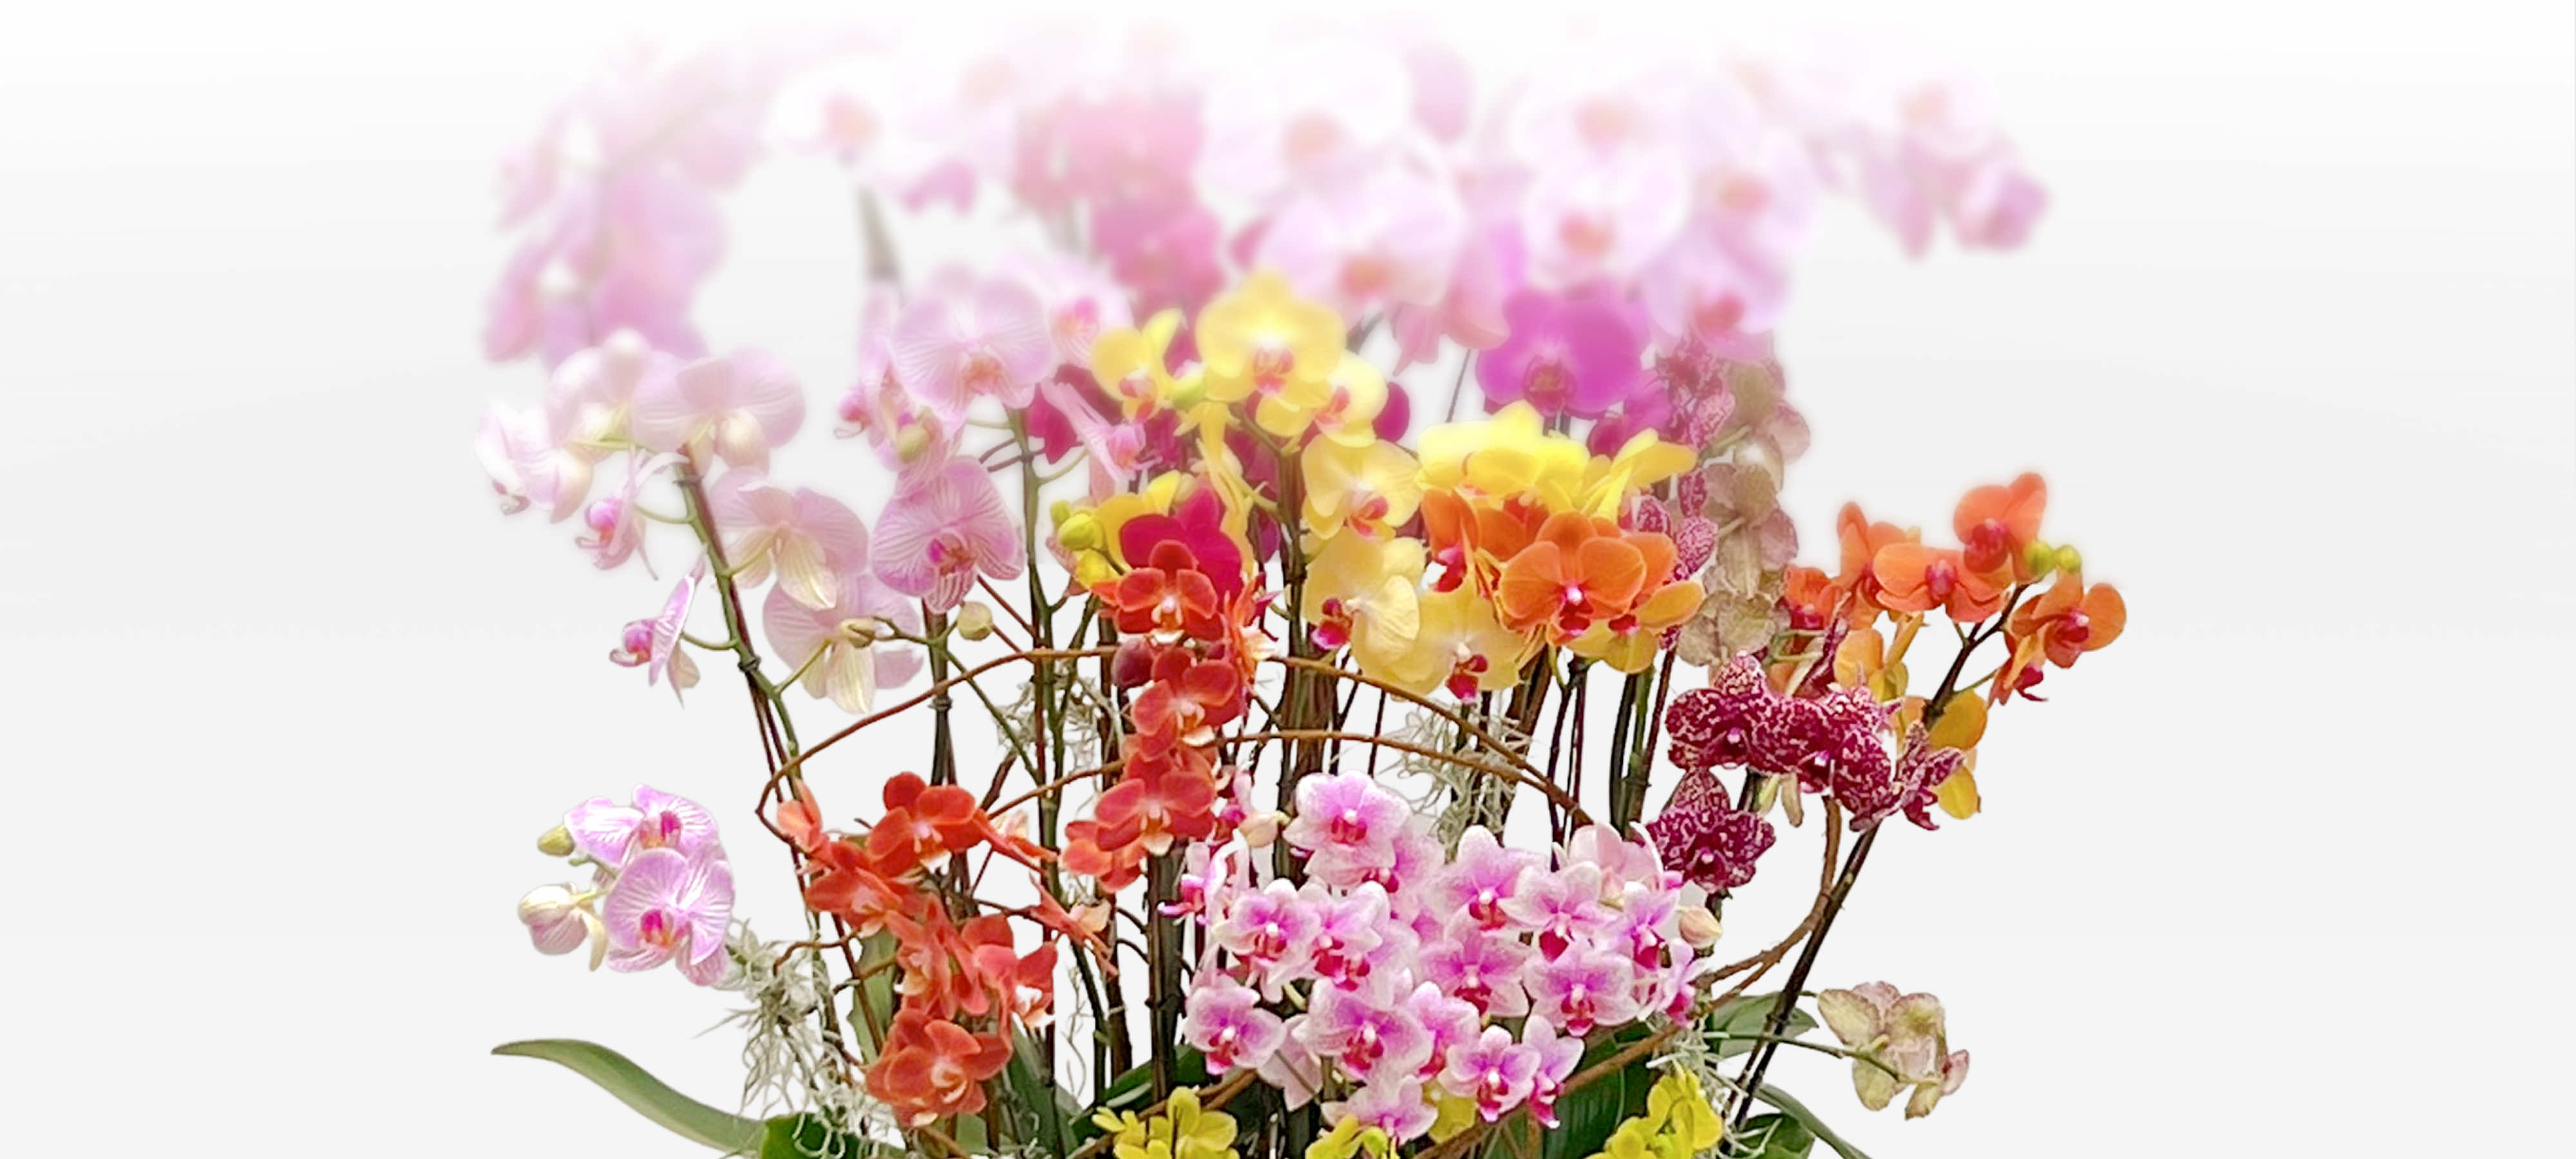 Jardin luxuriant d'orchidées multicolores